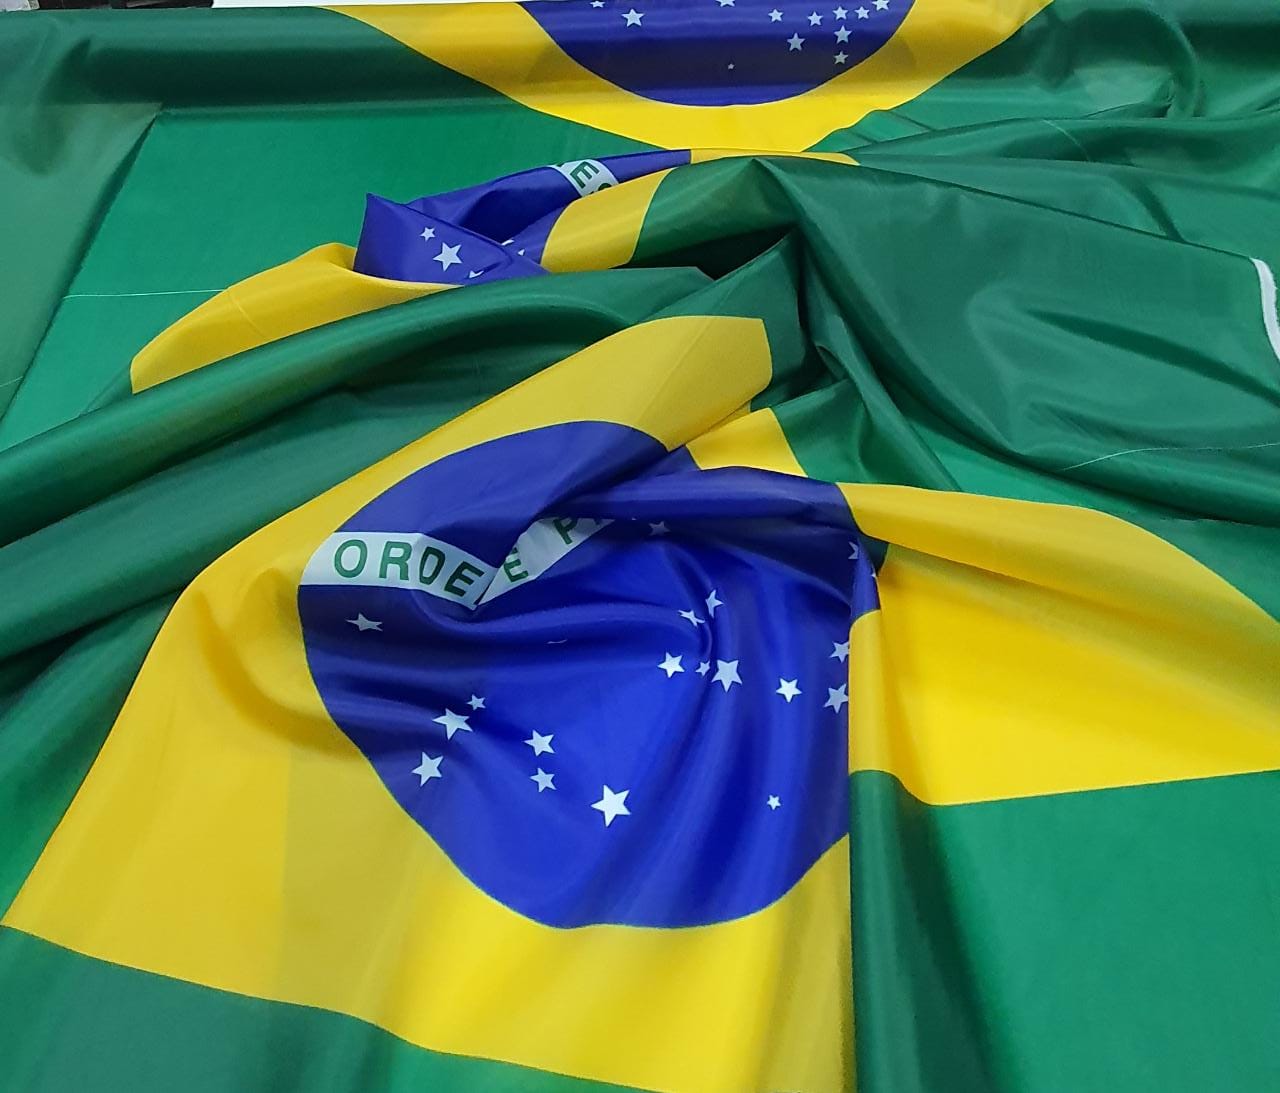 Bandeira do Brasil em Failete - Largura 1,50m x 0,95 m de comprimento